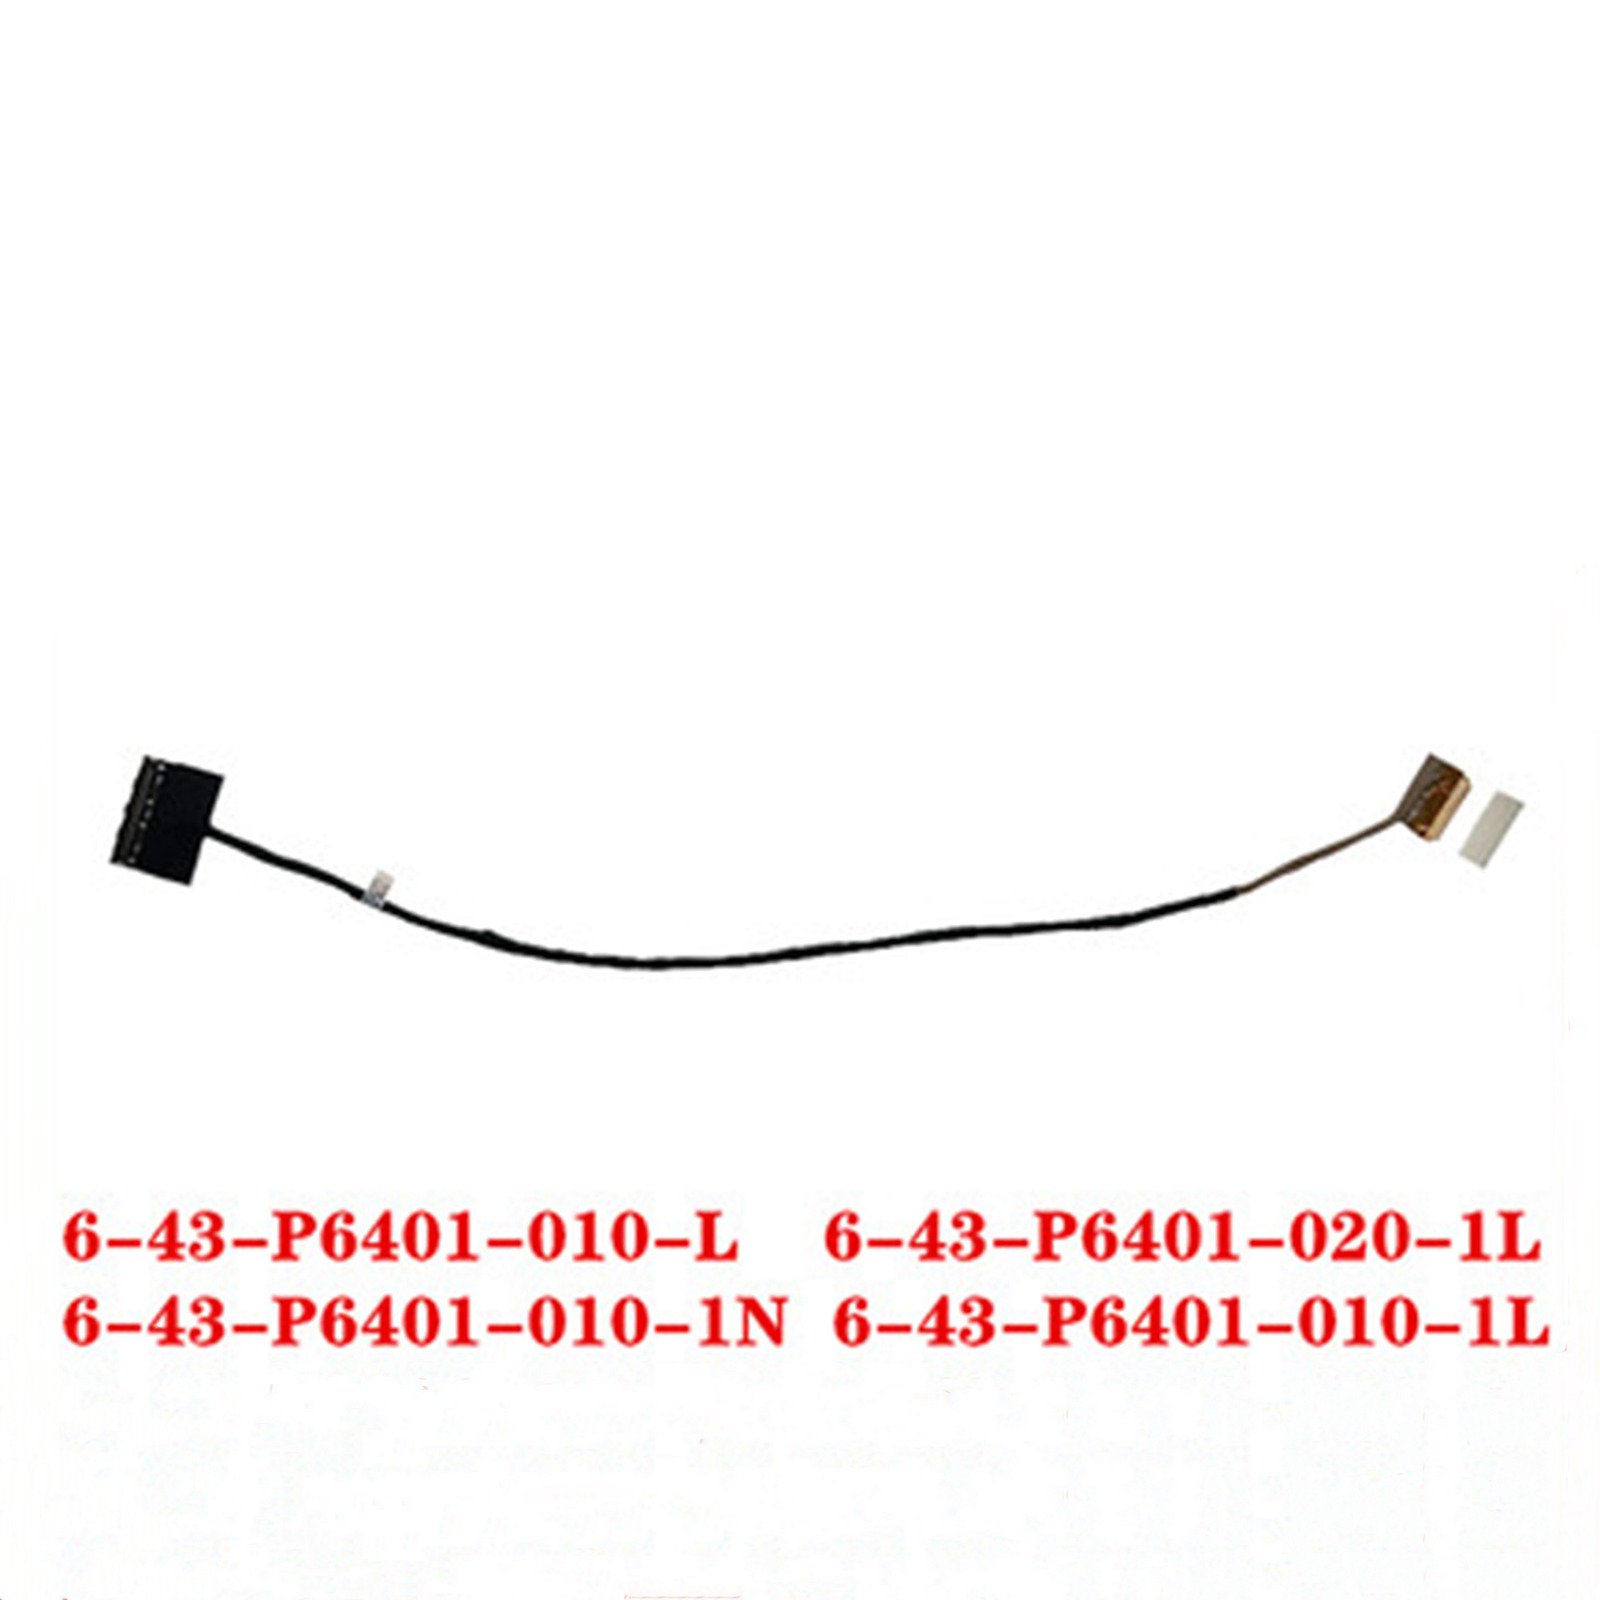 1pc Screen Cable for Clevo P640 P640RE 6-43-P6401-010-L/1N/1L 6-43-P6401-020-1L